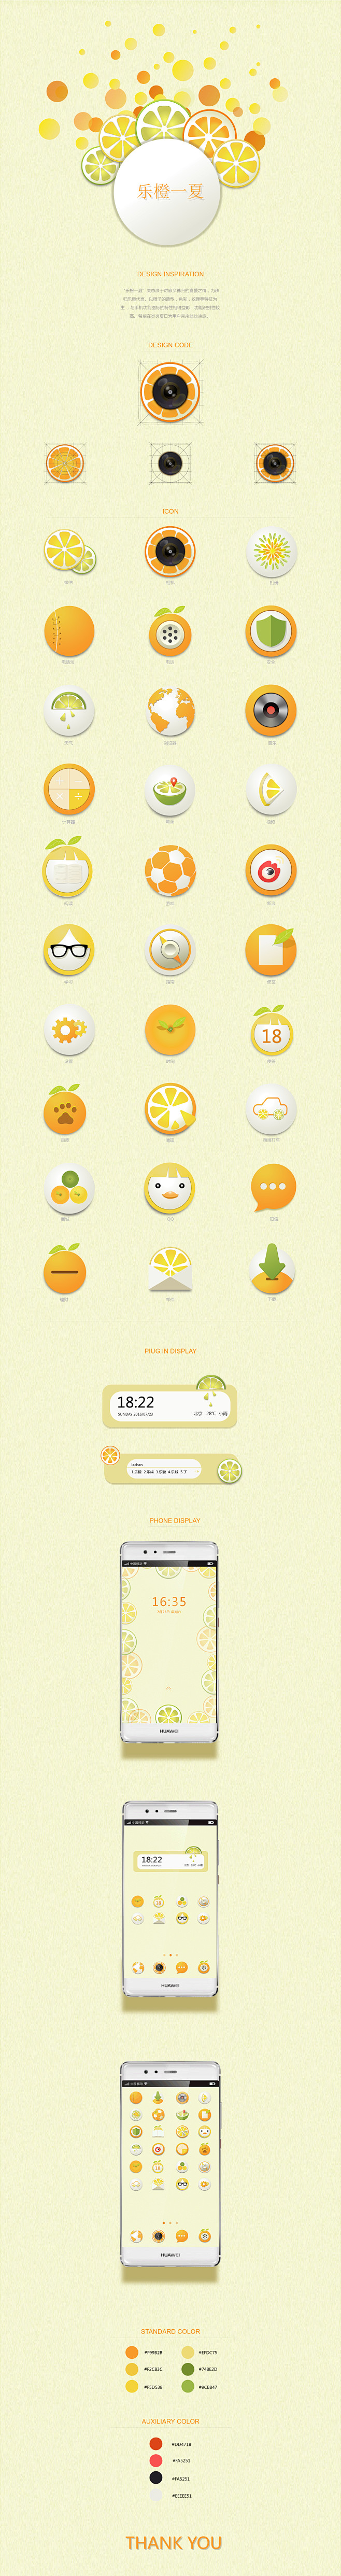 橙子主题图标设计GUI展示  原创设计